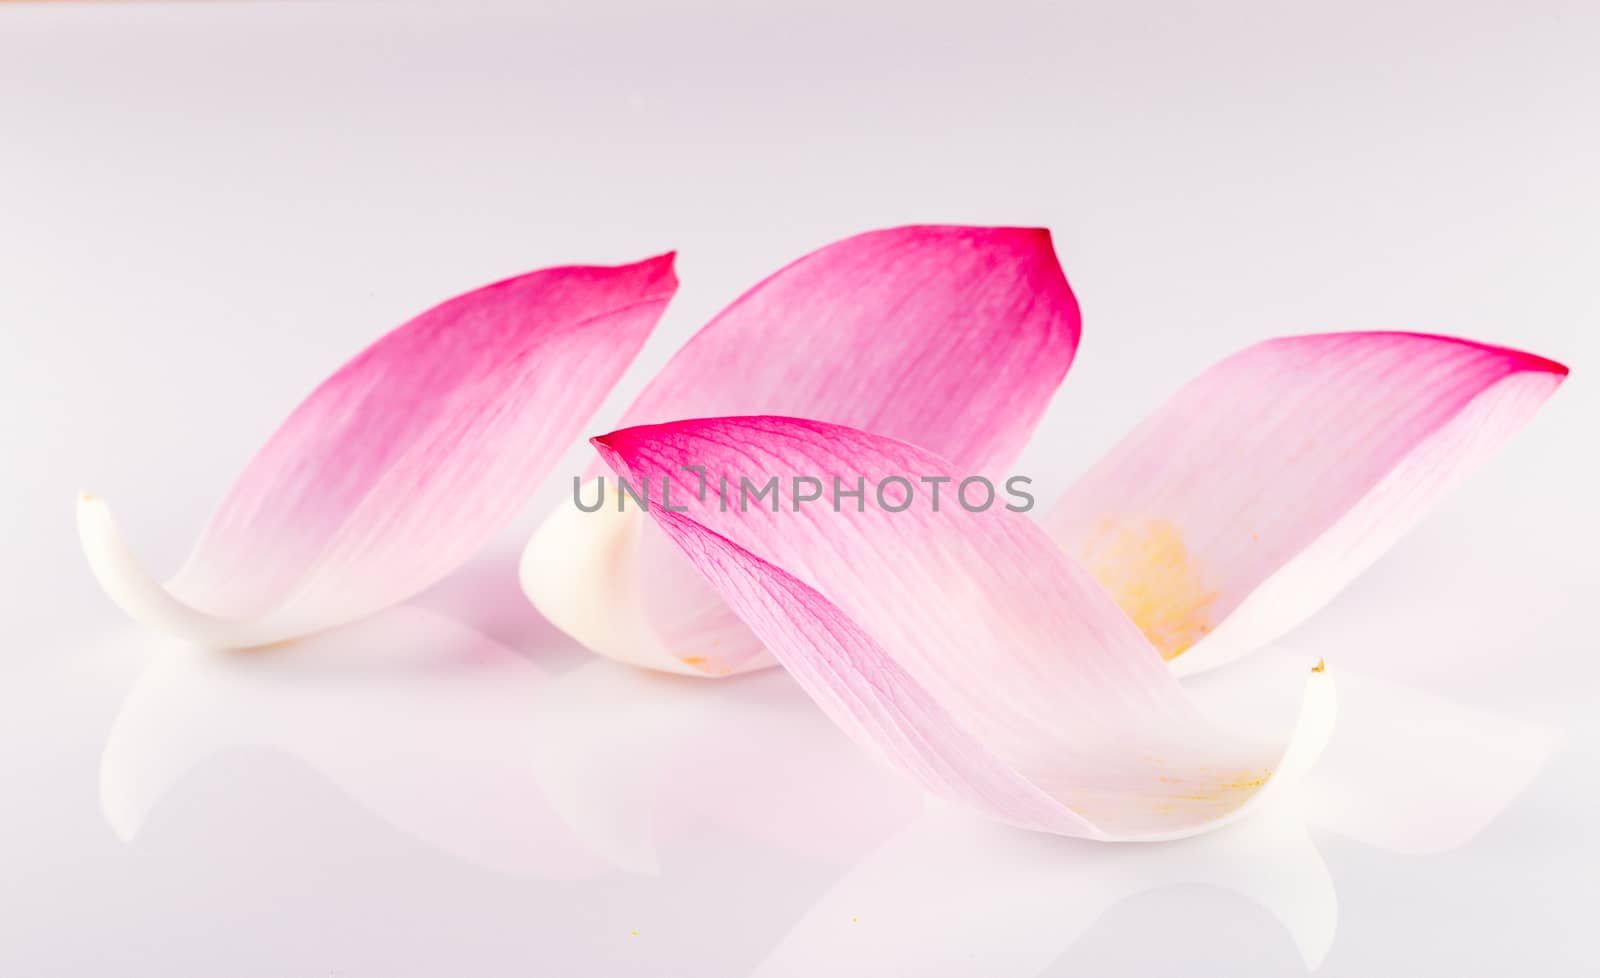 Closeup on lotus petal,Shallow Dof.